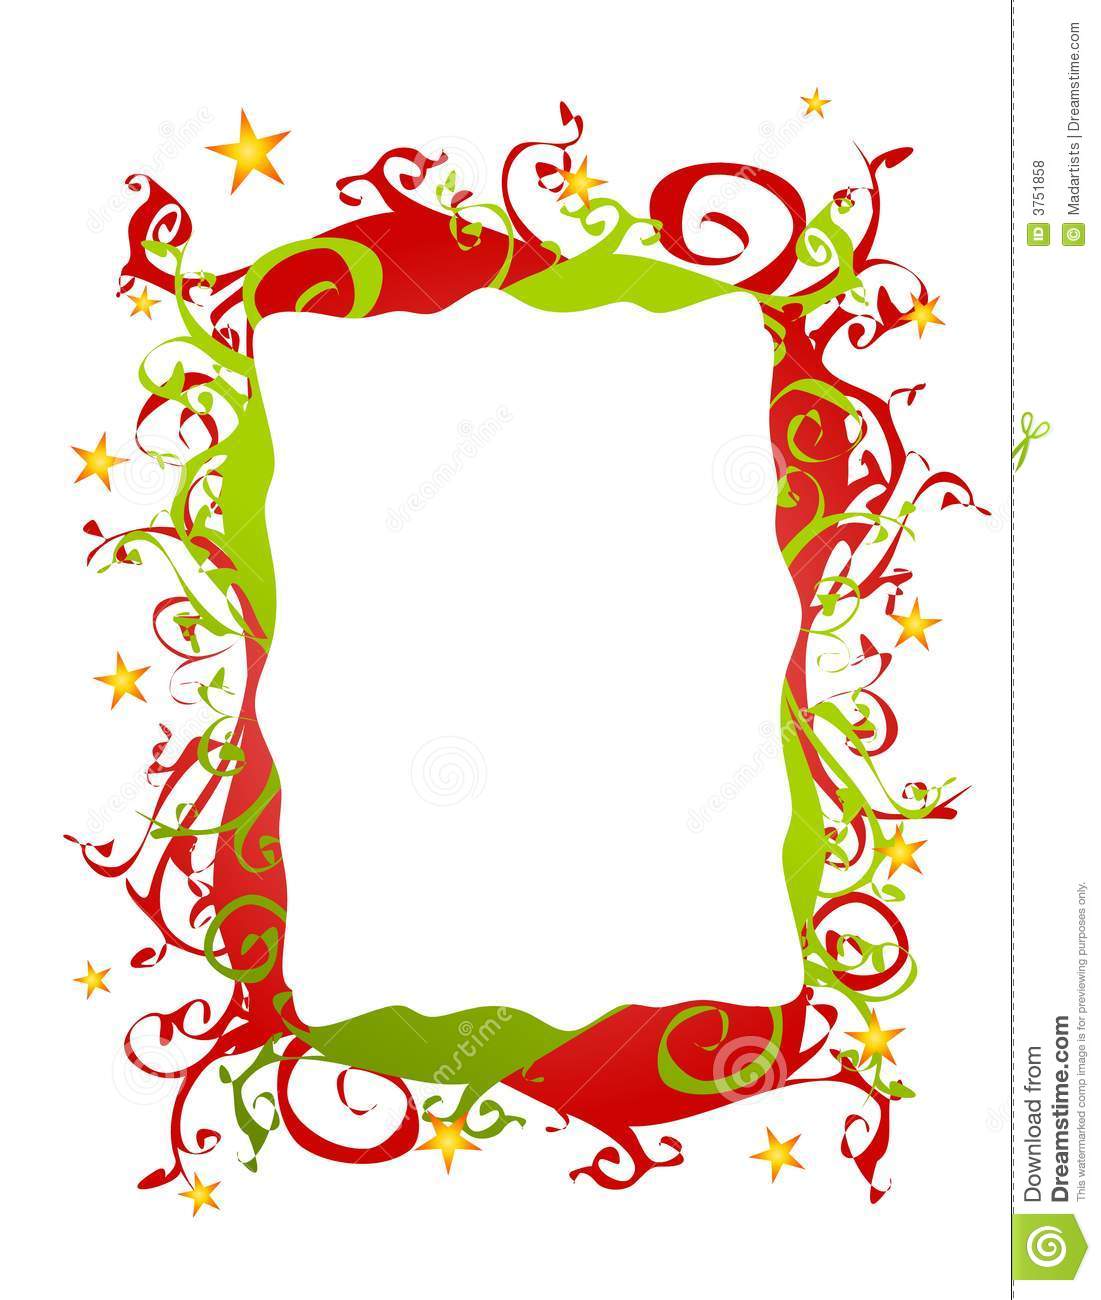 Free Printable Christmas Borders Clip Art